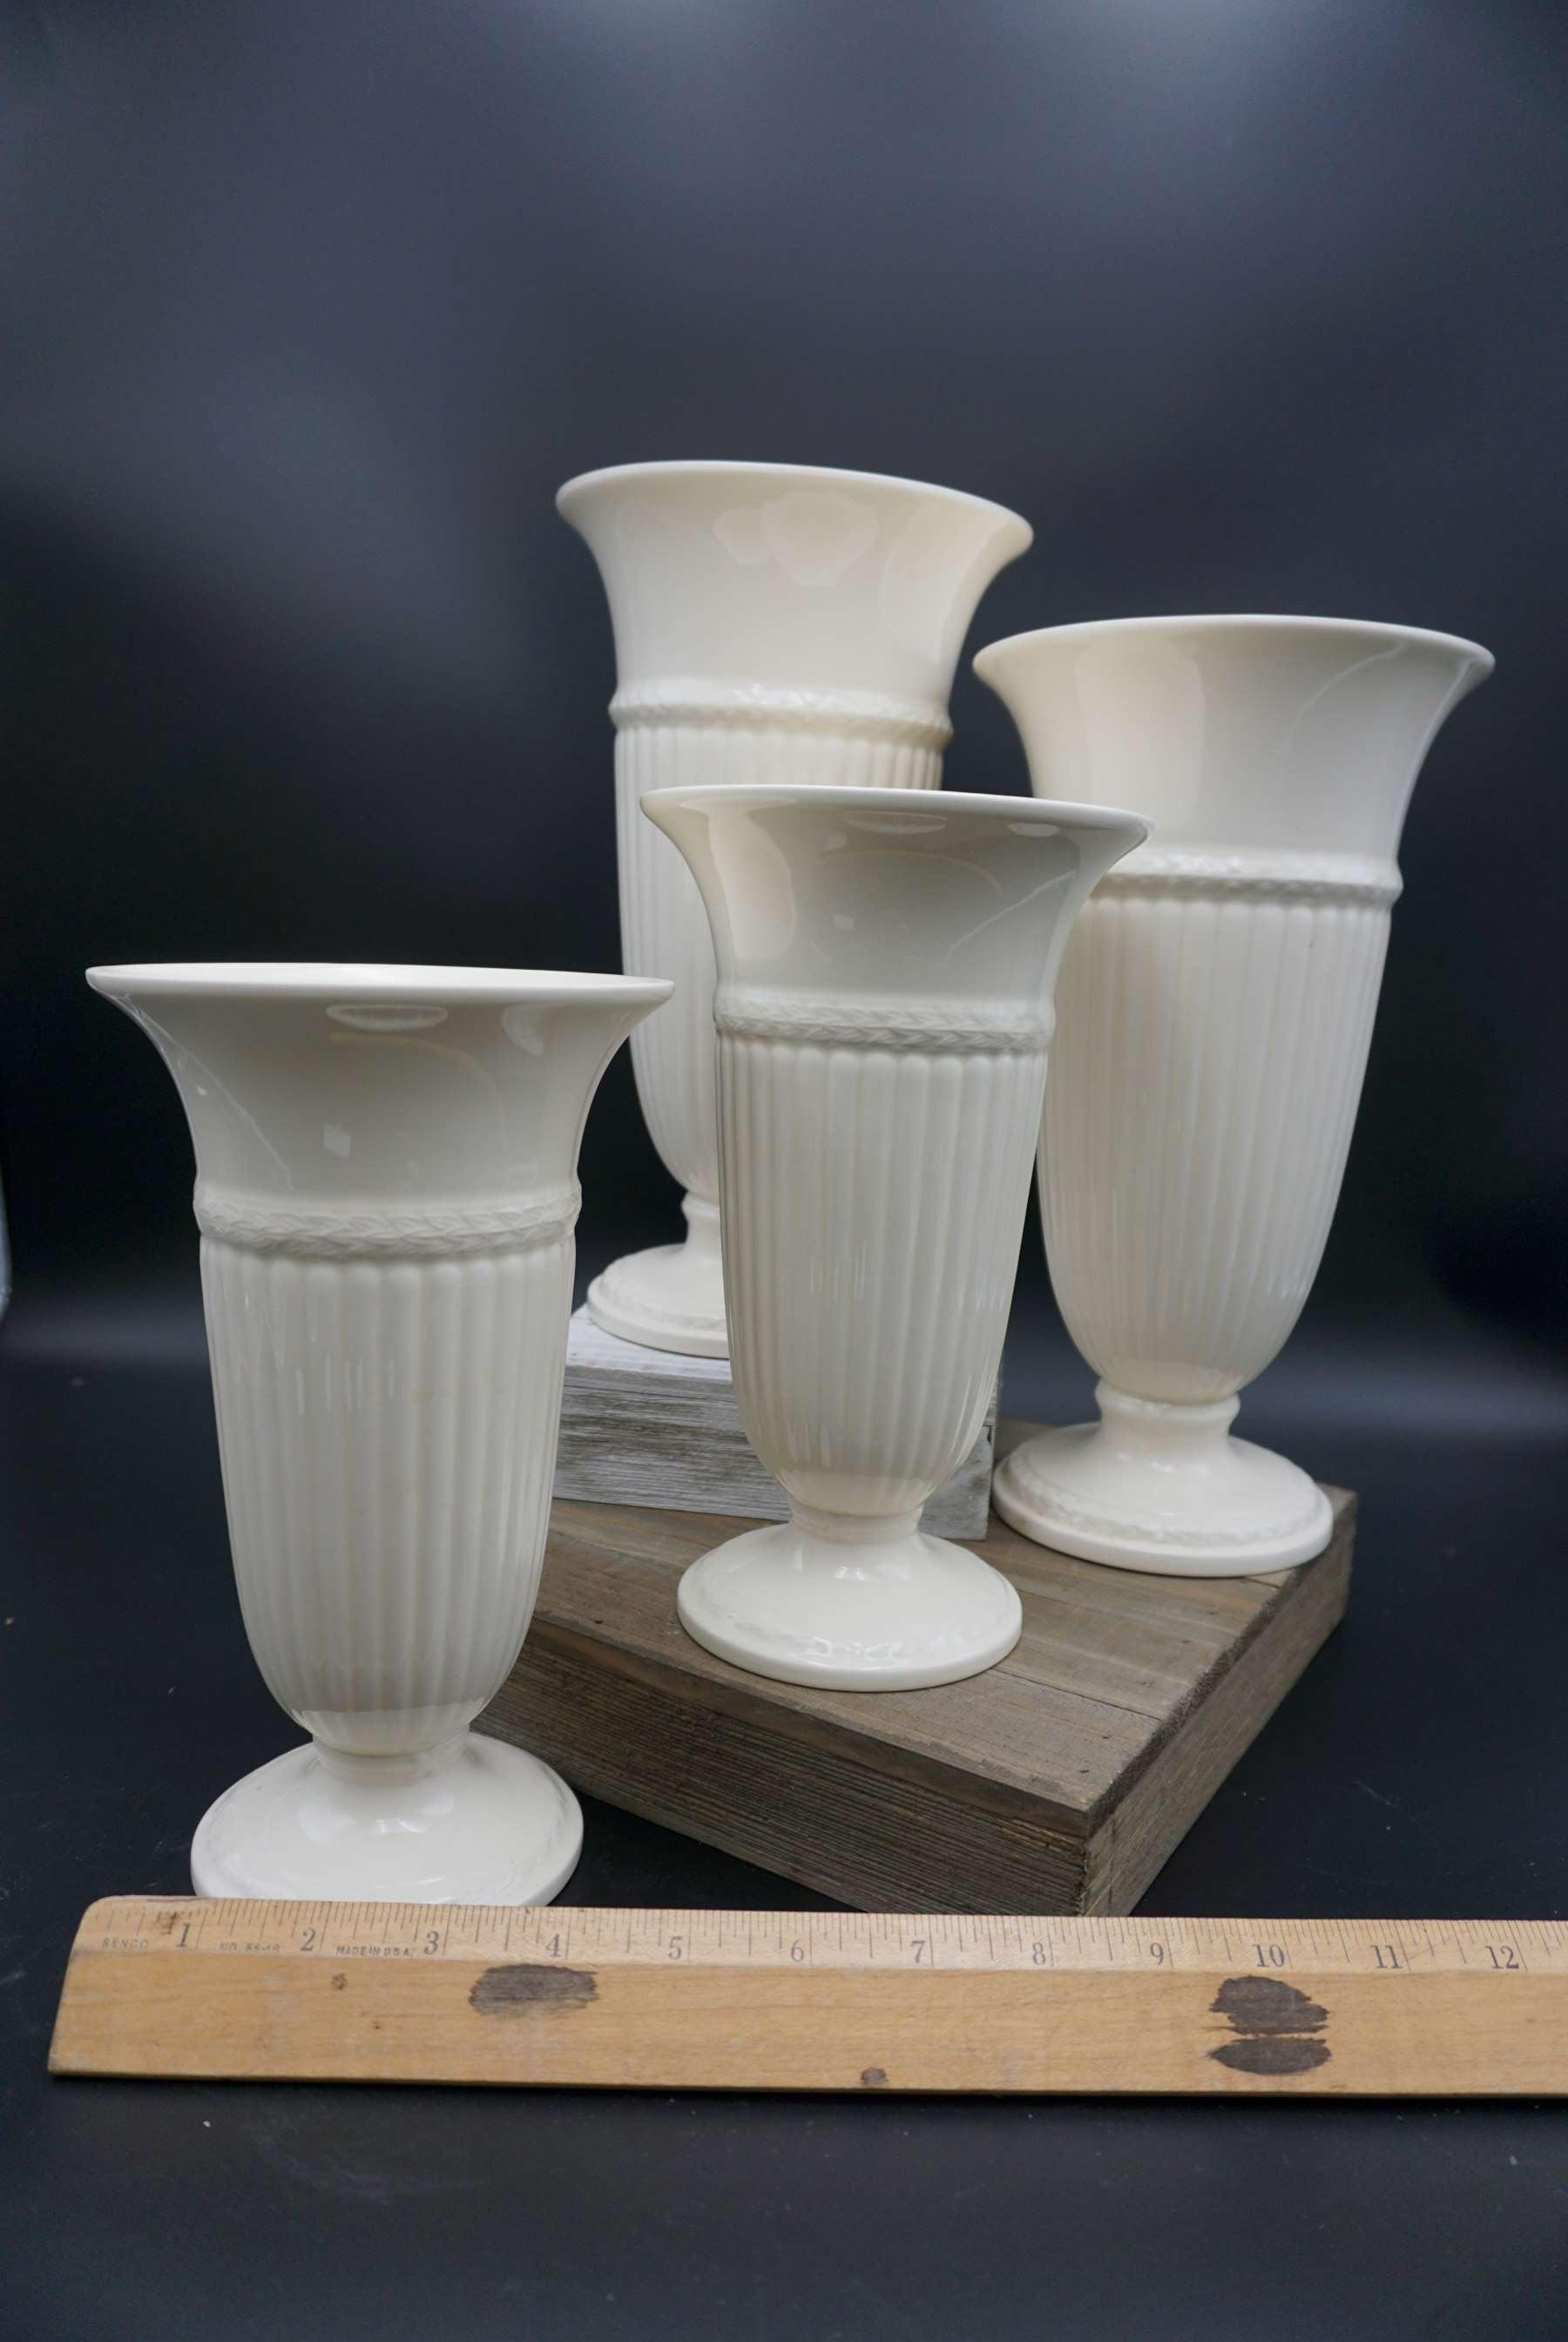 Set of 4 medium Wedgewood China vases, 9 inches